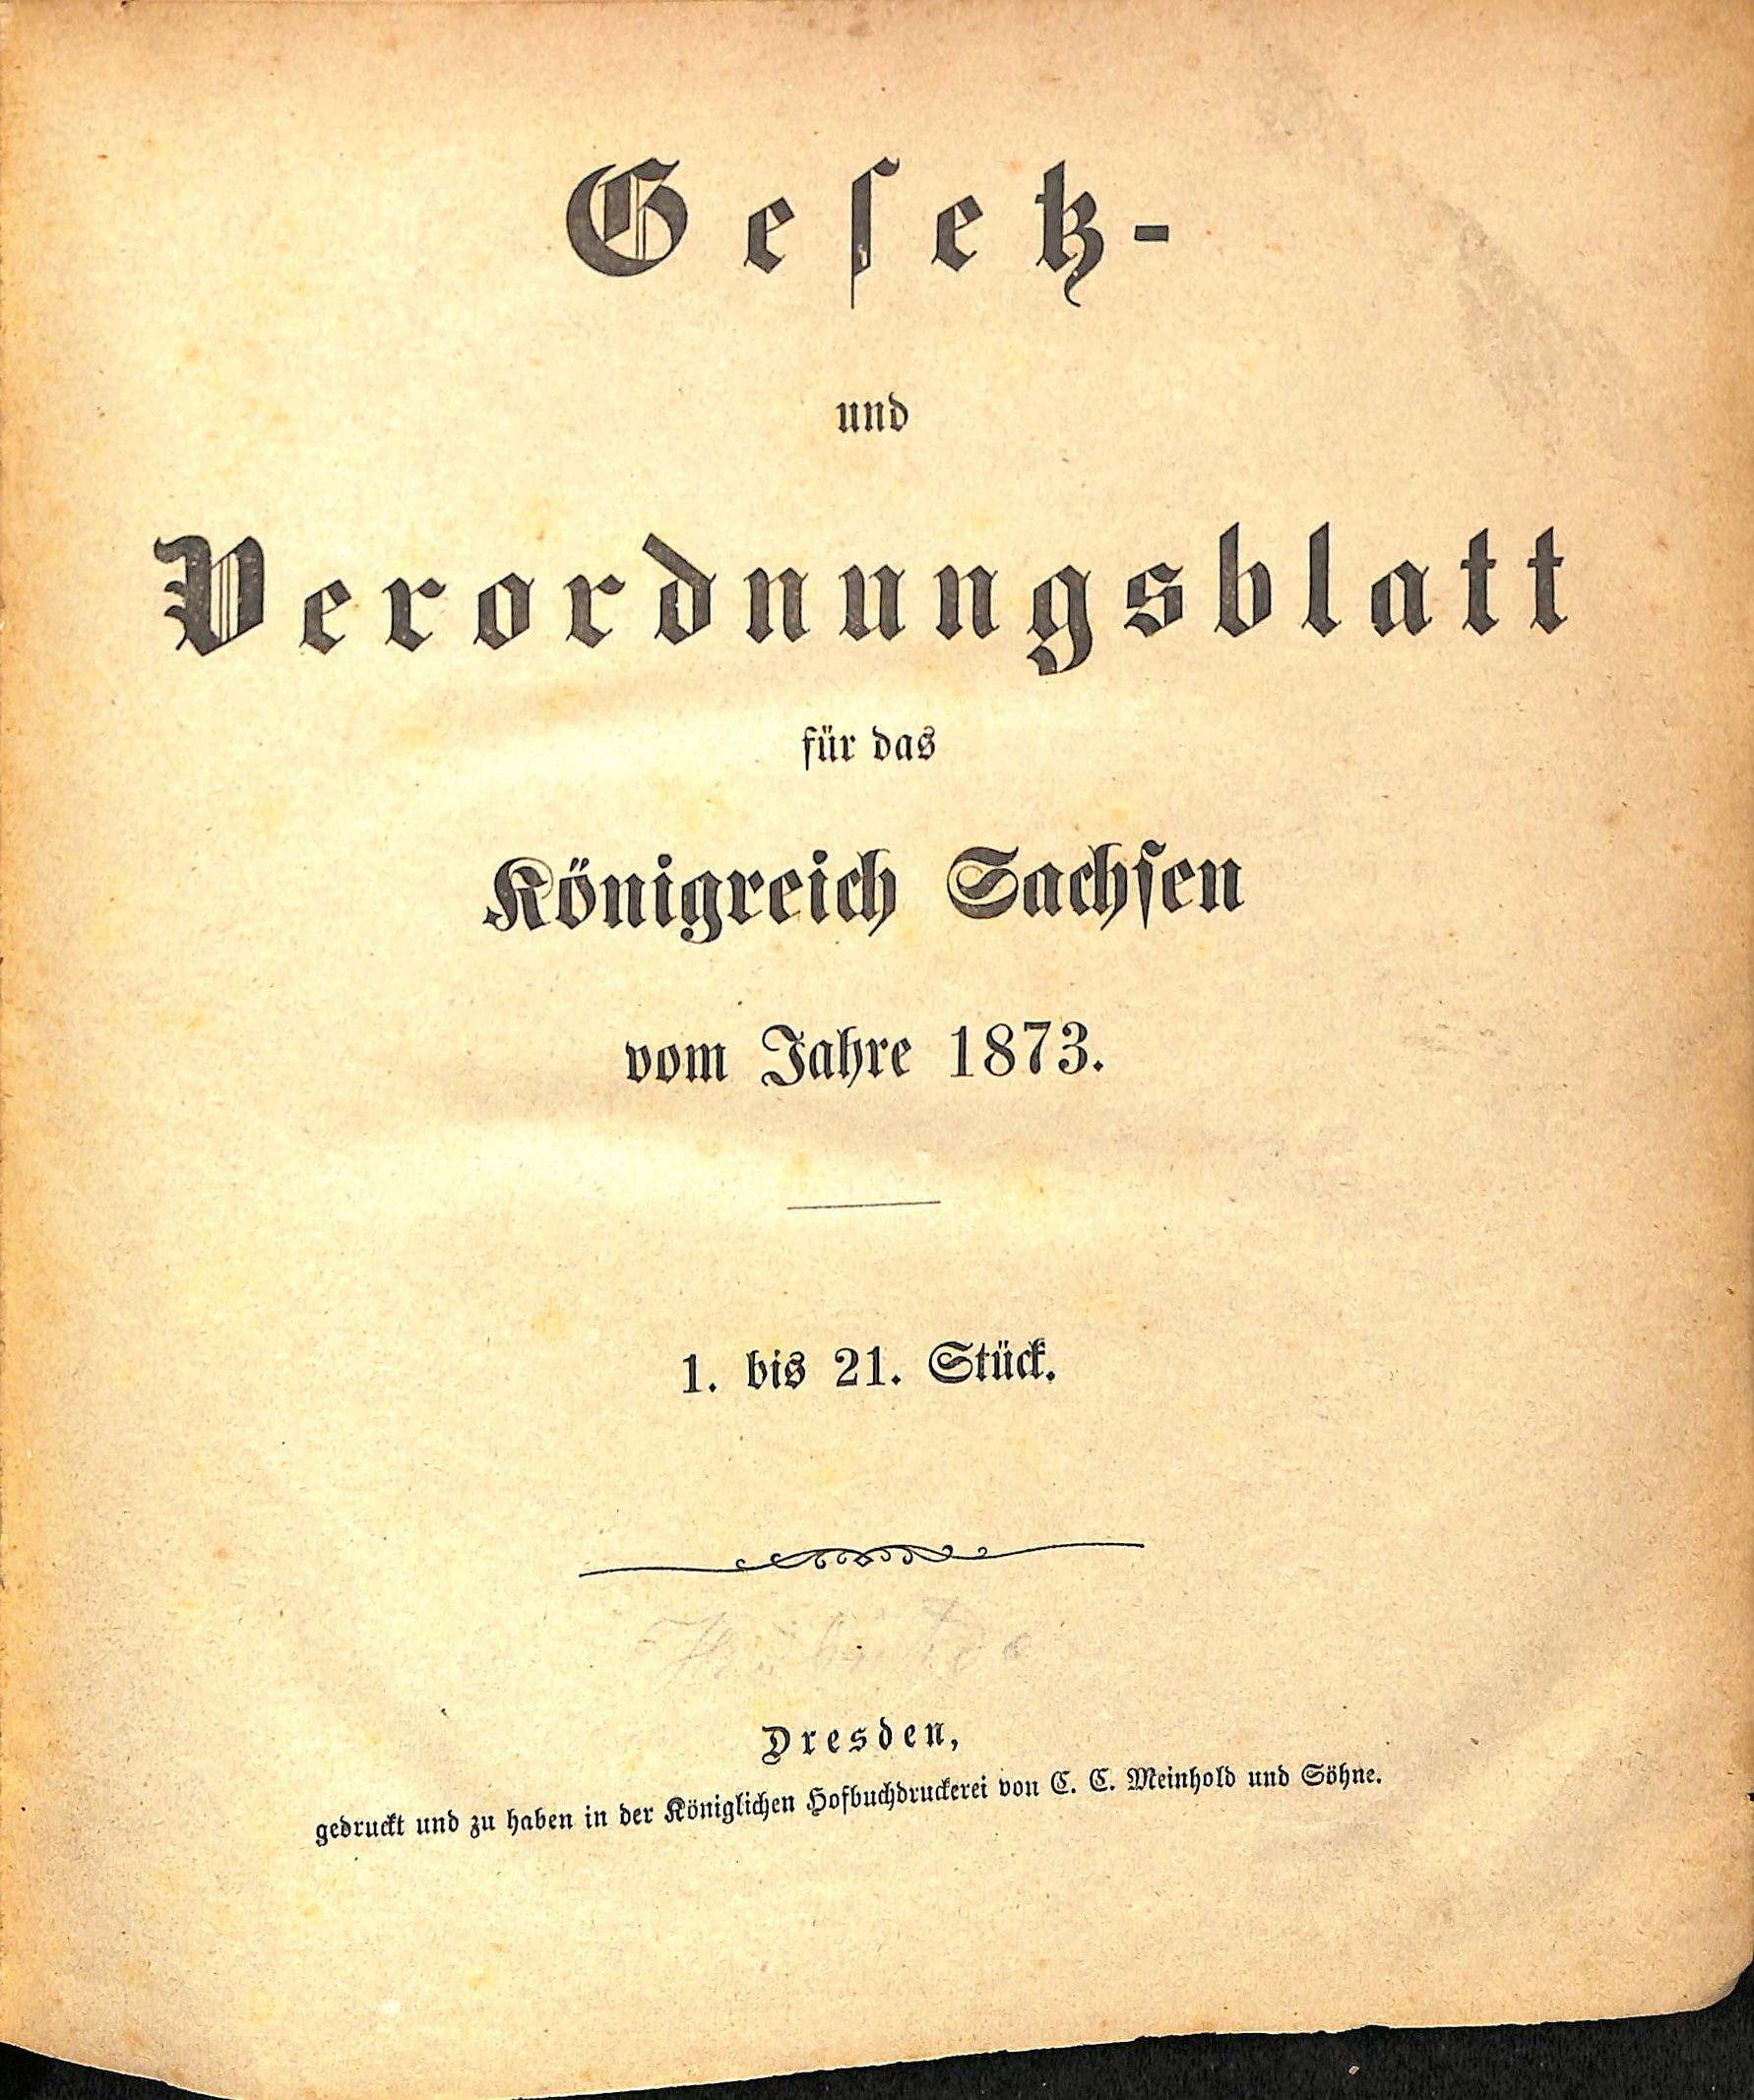 Gesetz- und Verordnungsblatt für das Königreich Sachsen vom Jahre 1873 (HEIMATWELTEN Zwönitz - Raritätensammlung Bruno Gebhardt CC BY-NC-SA)